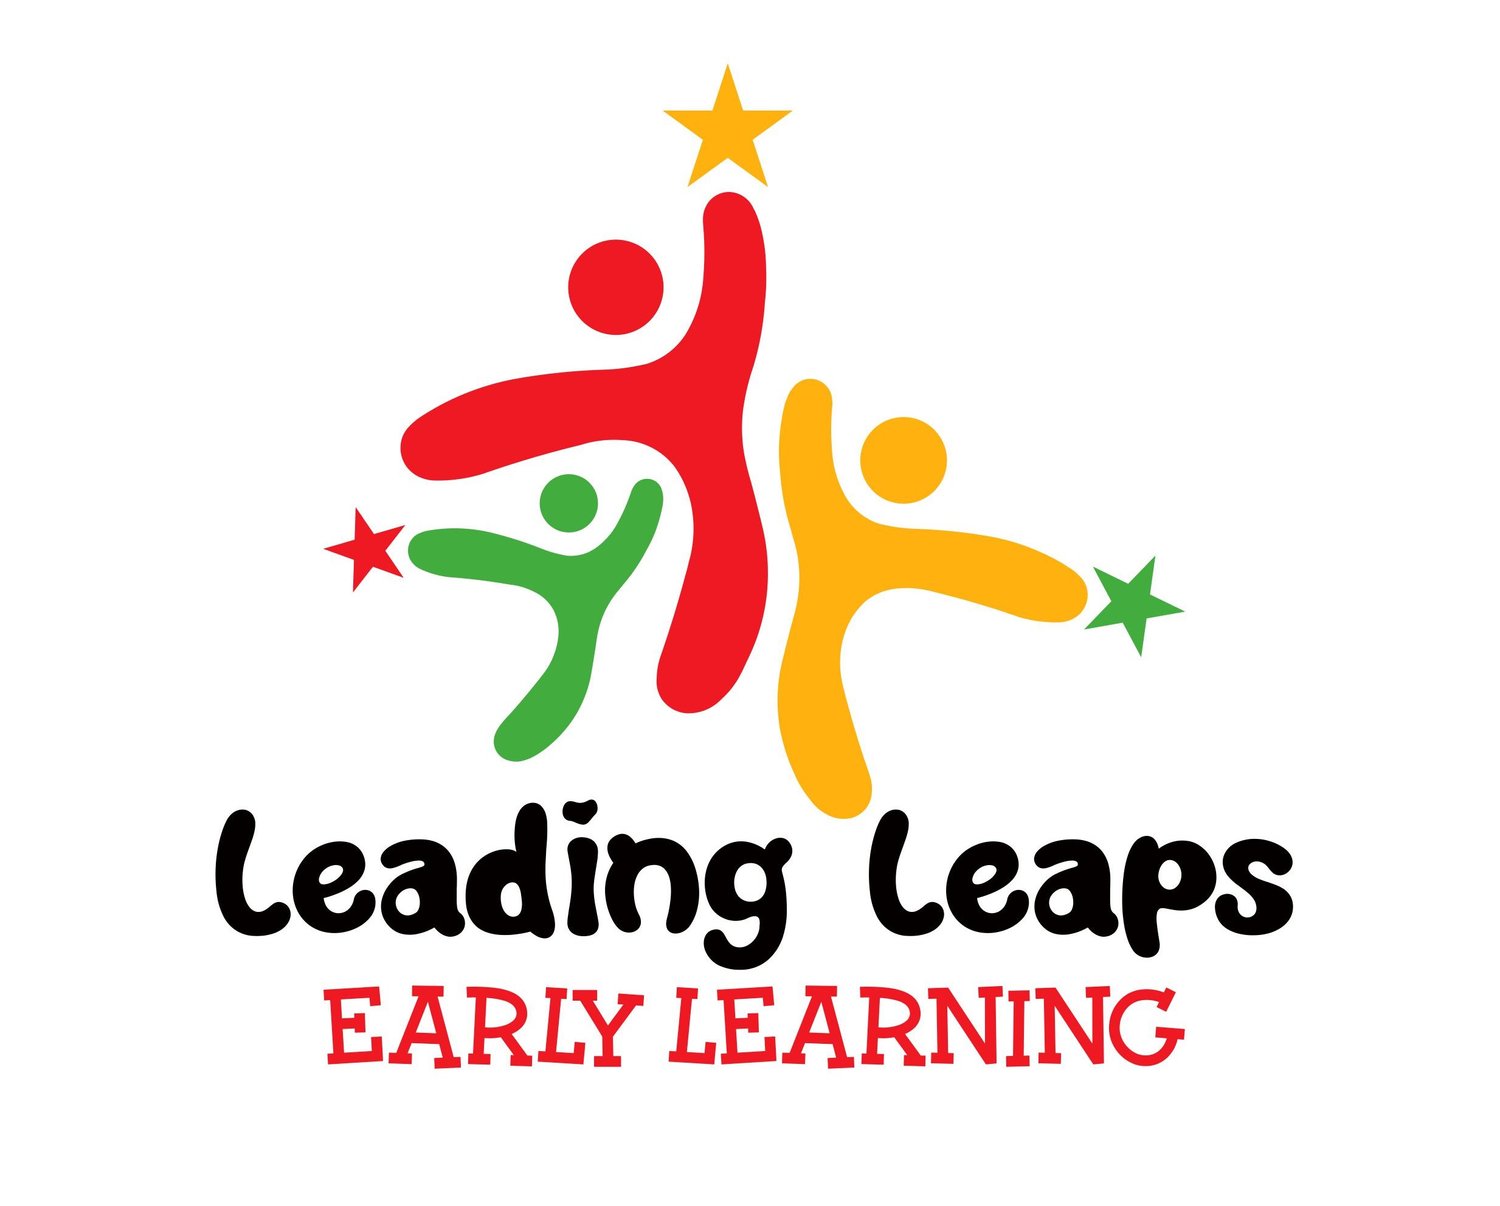 Leading Leaps